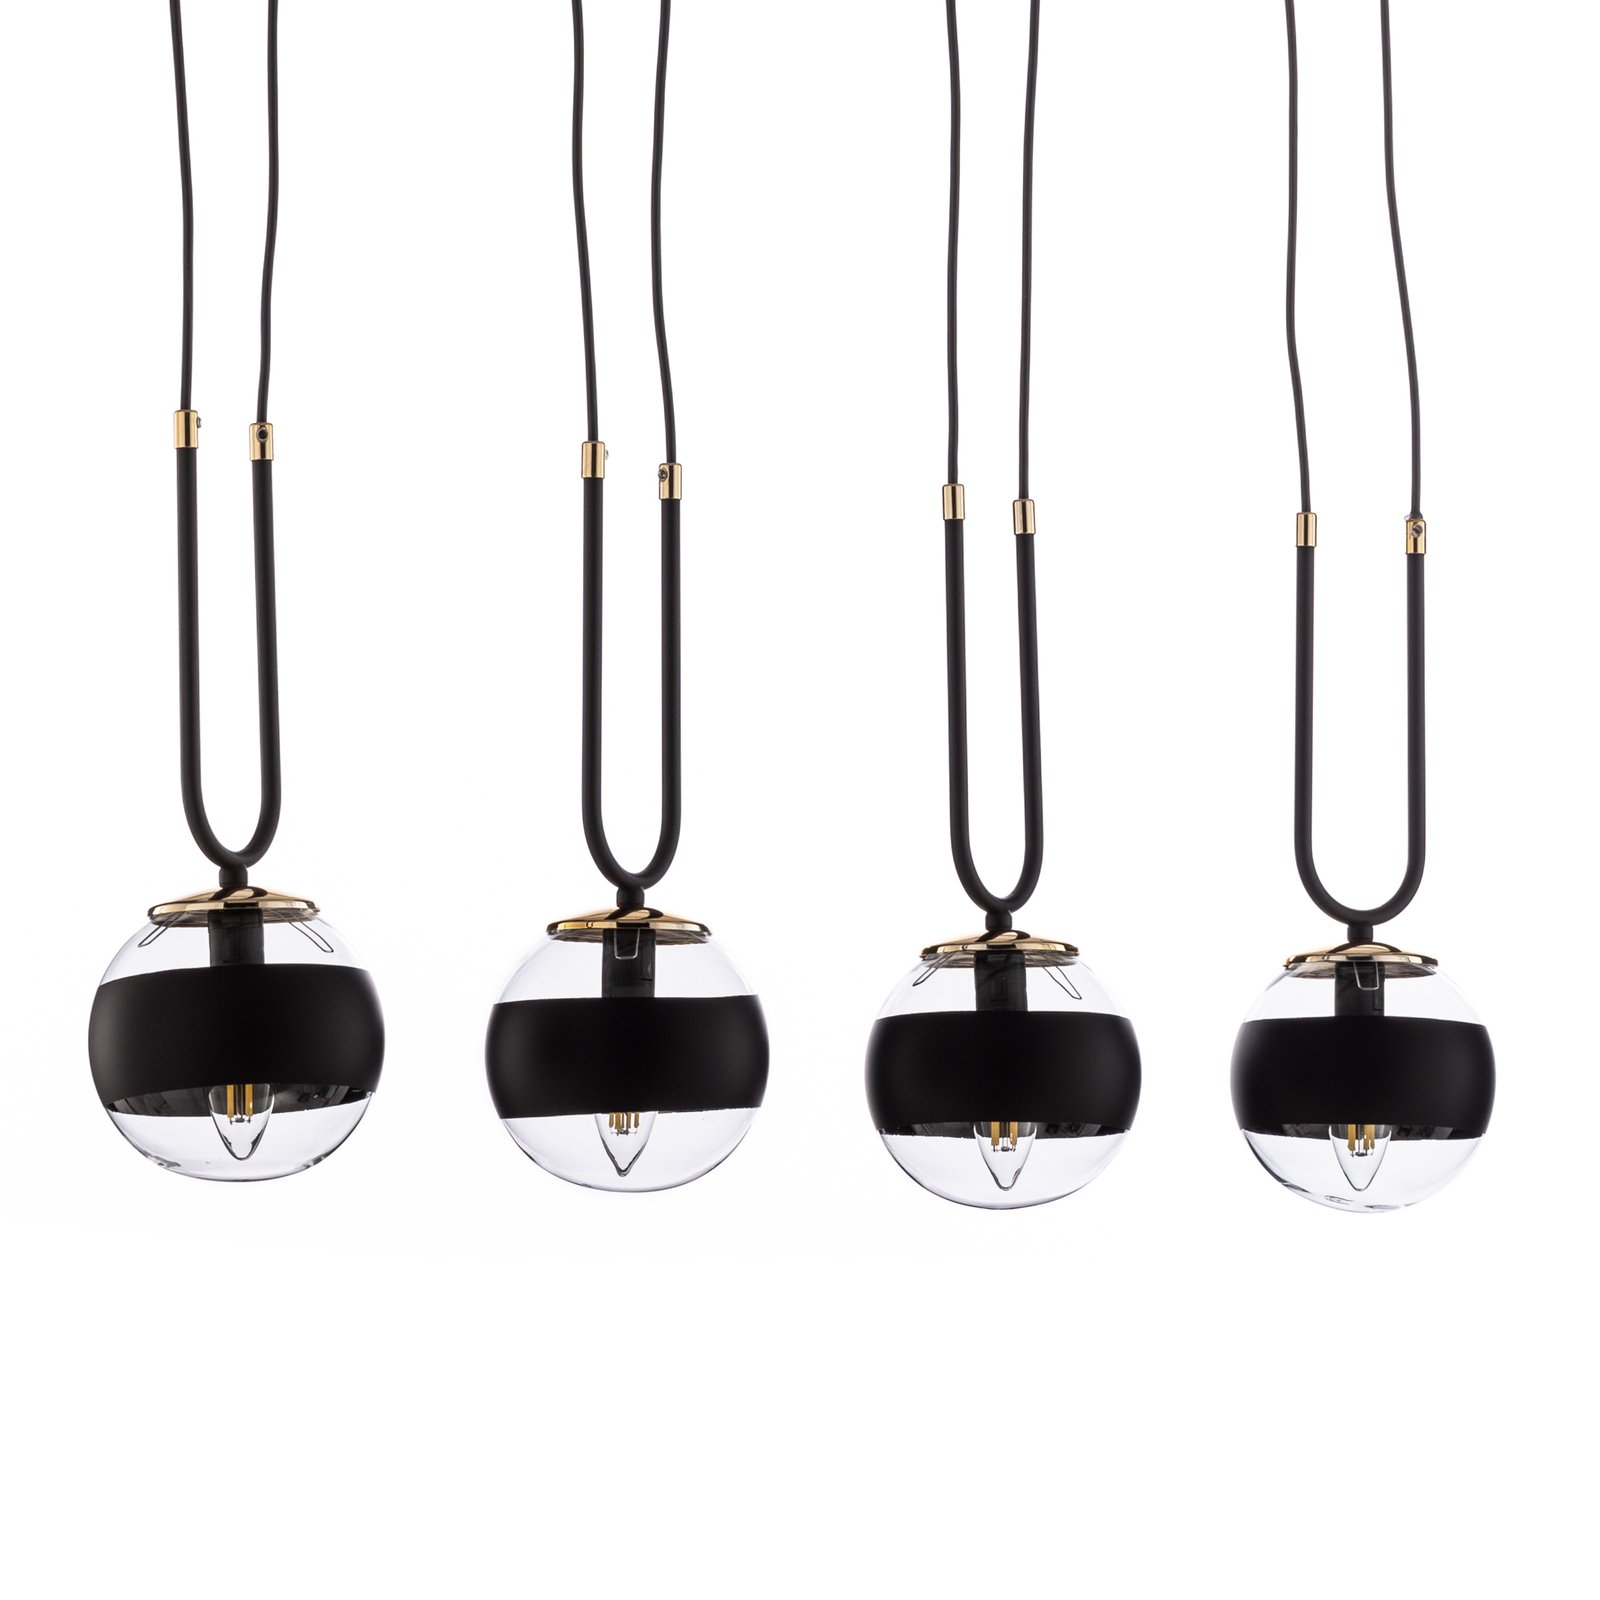 Hanglamp Linear, zwart/helder, 4-lamps